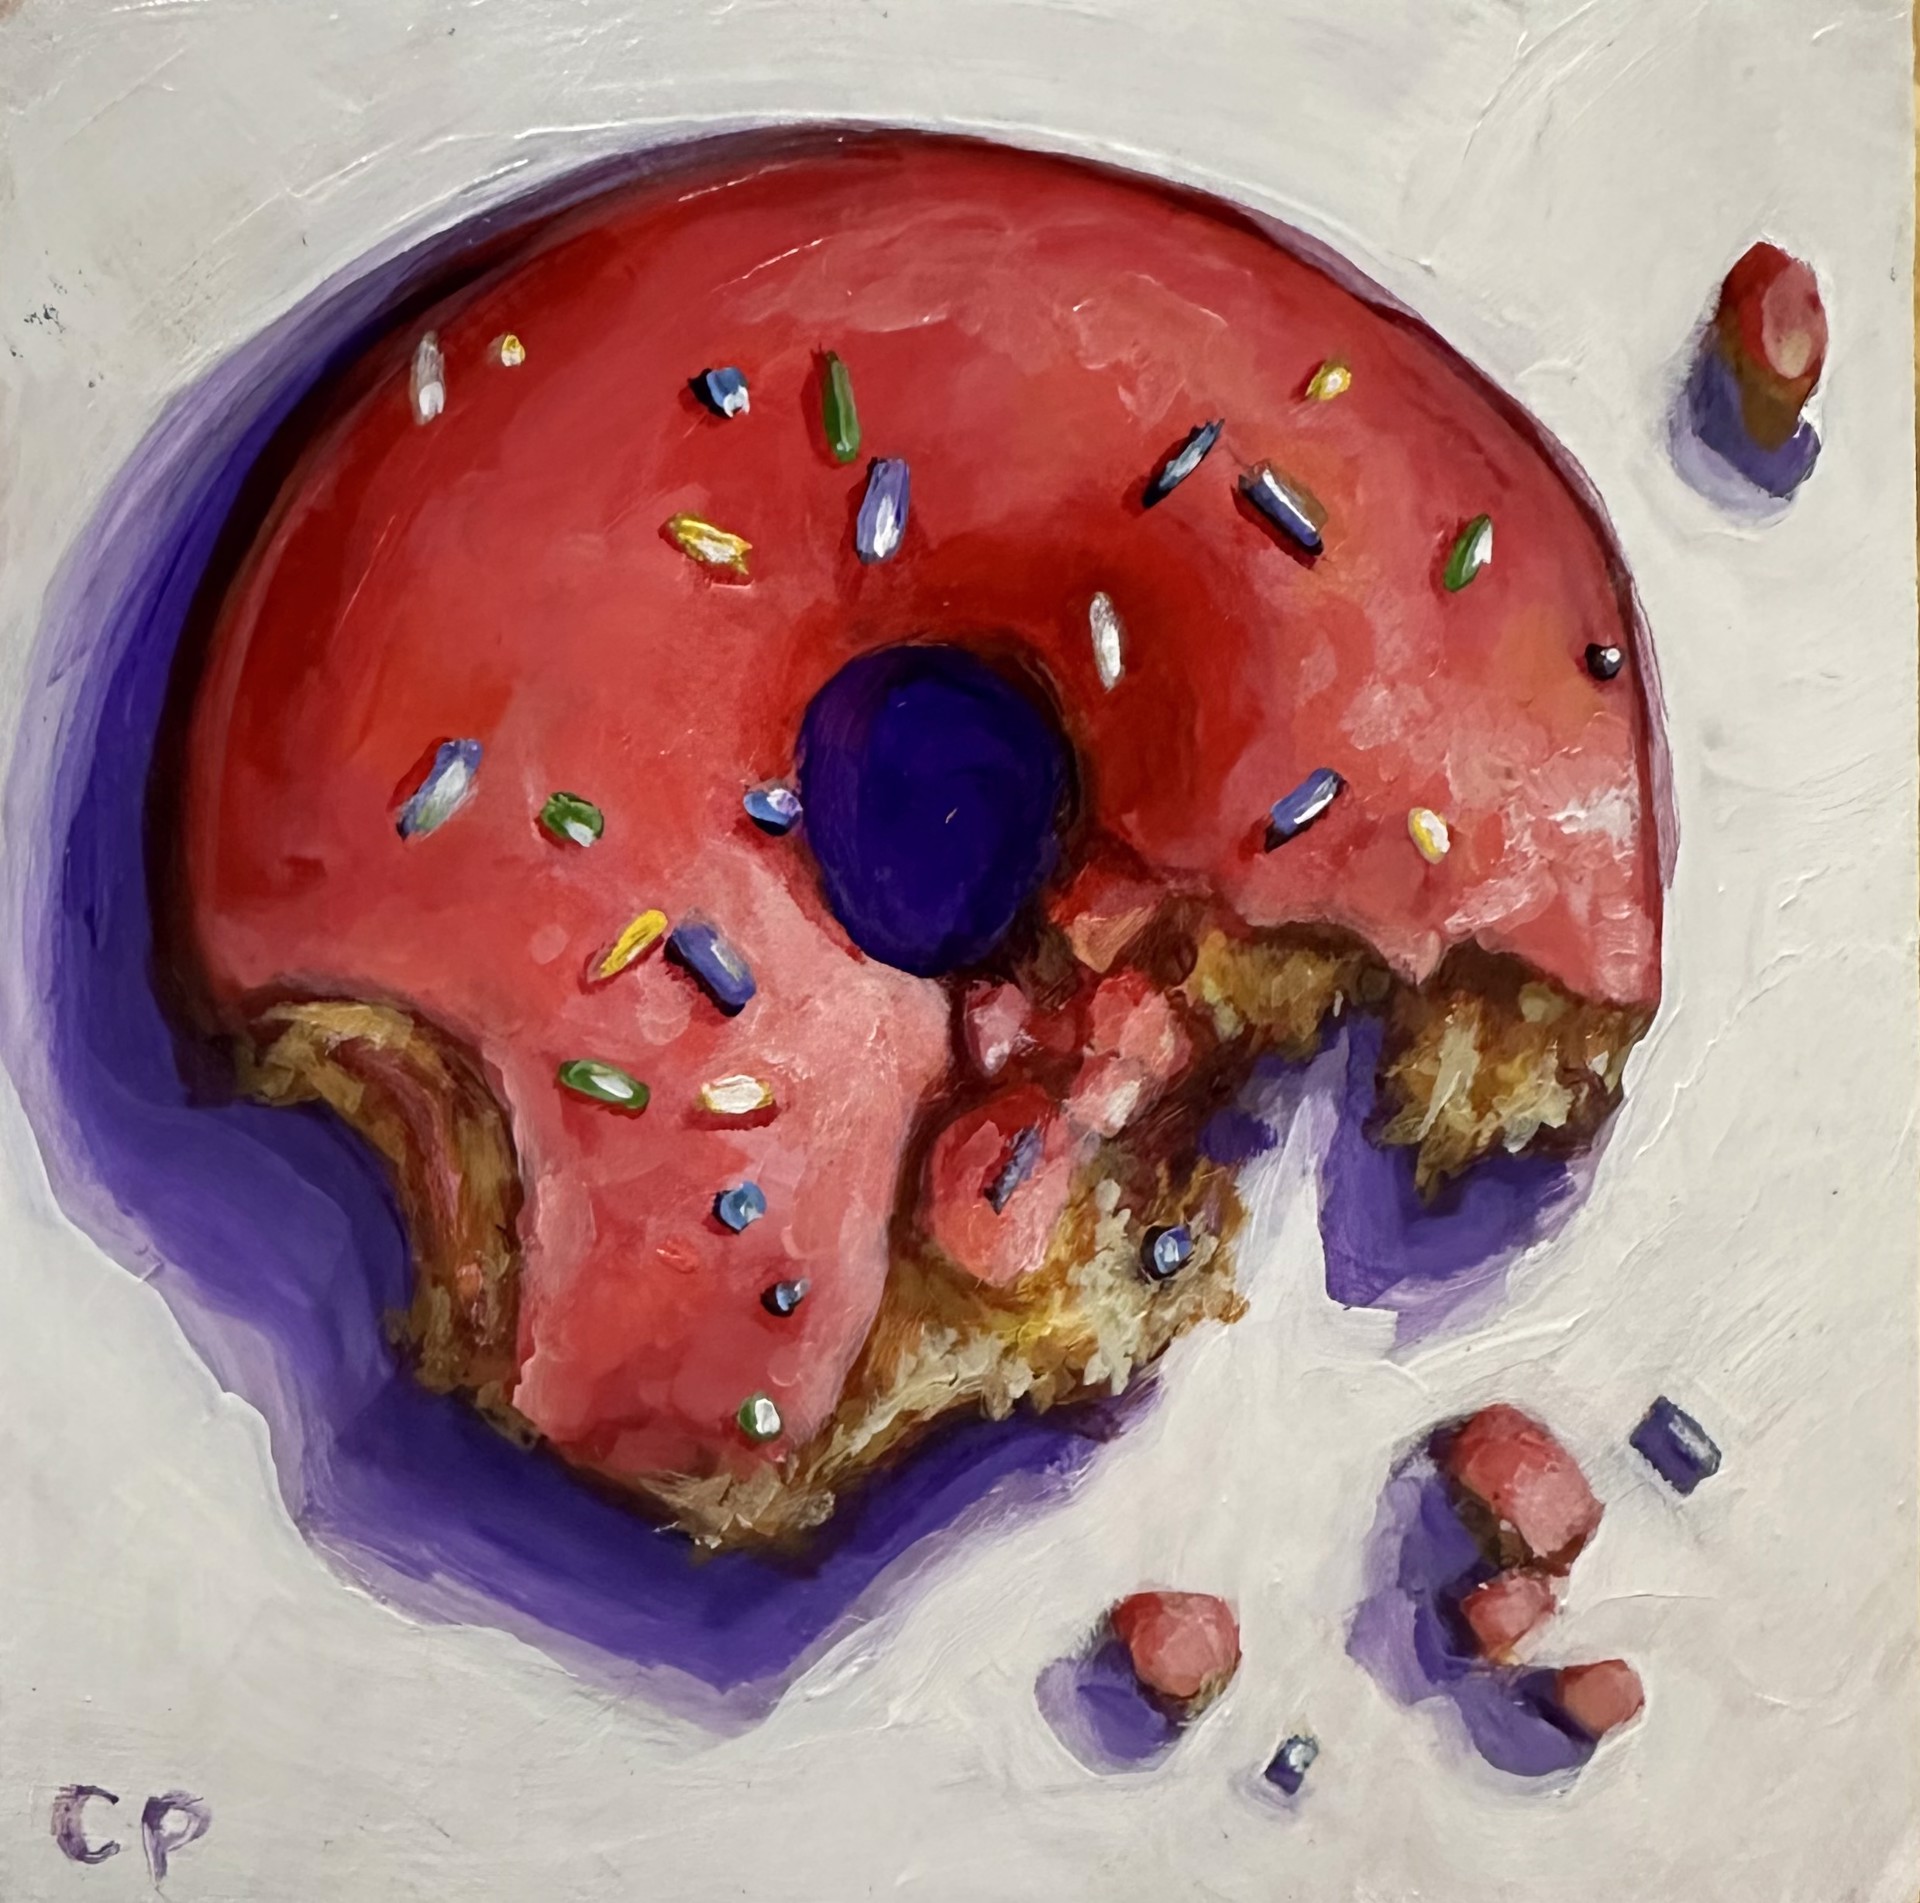 Donut III by Cullen Peck